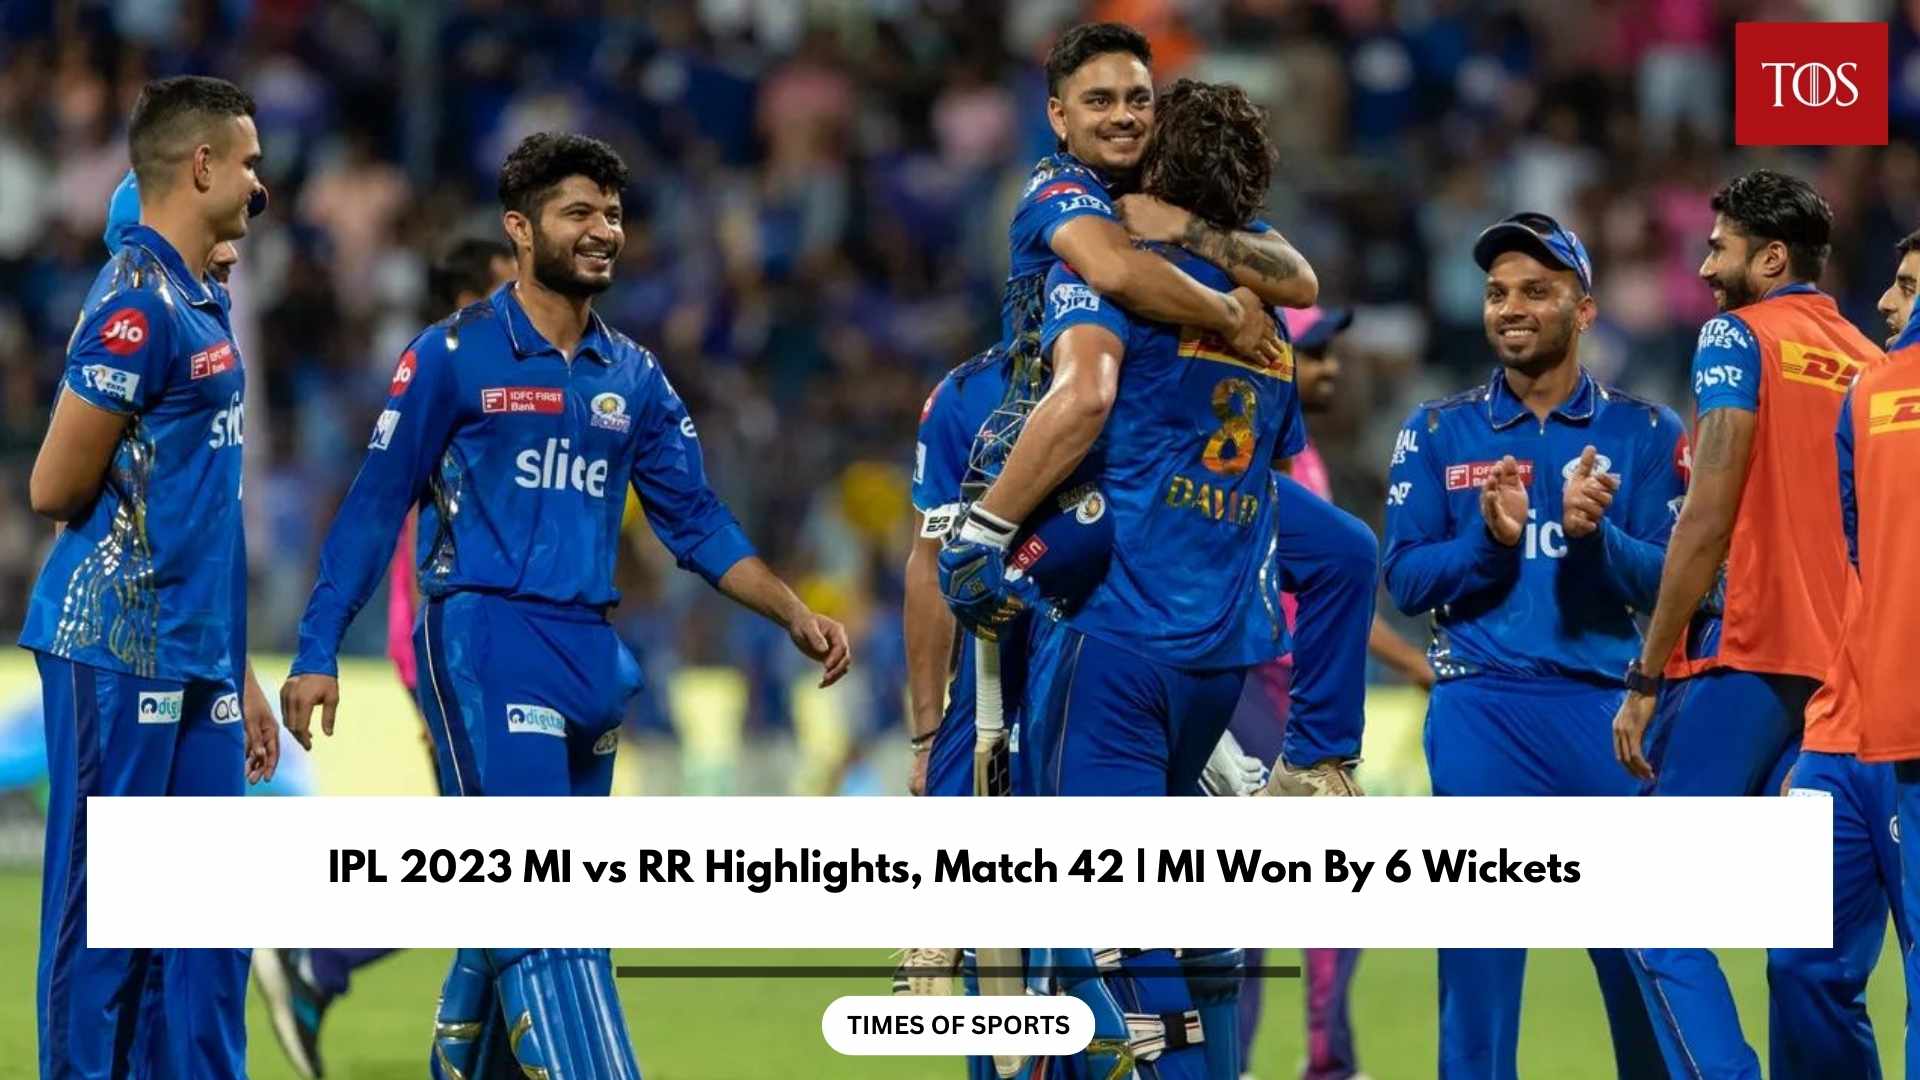 IPL 2023 MI vs RR Highlights, Match 42 MI Won By 6 Wickets